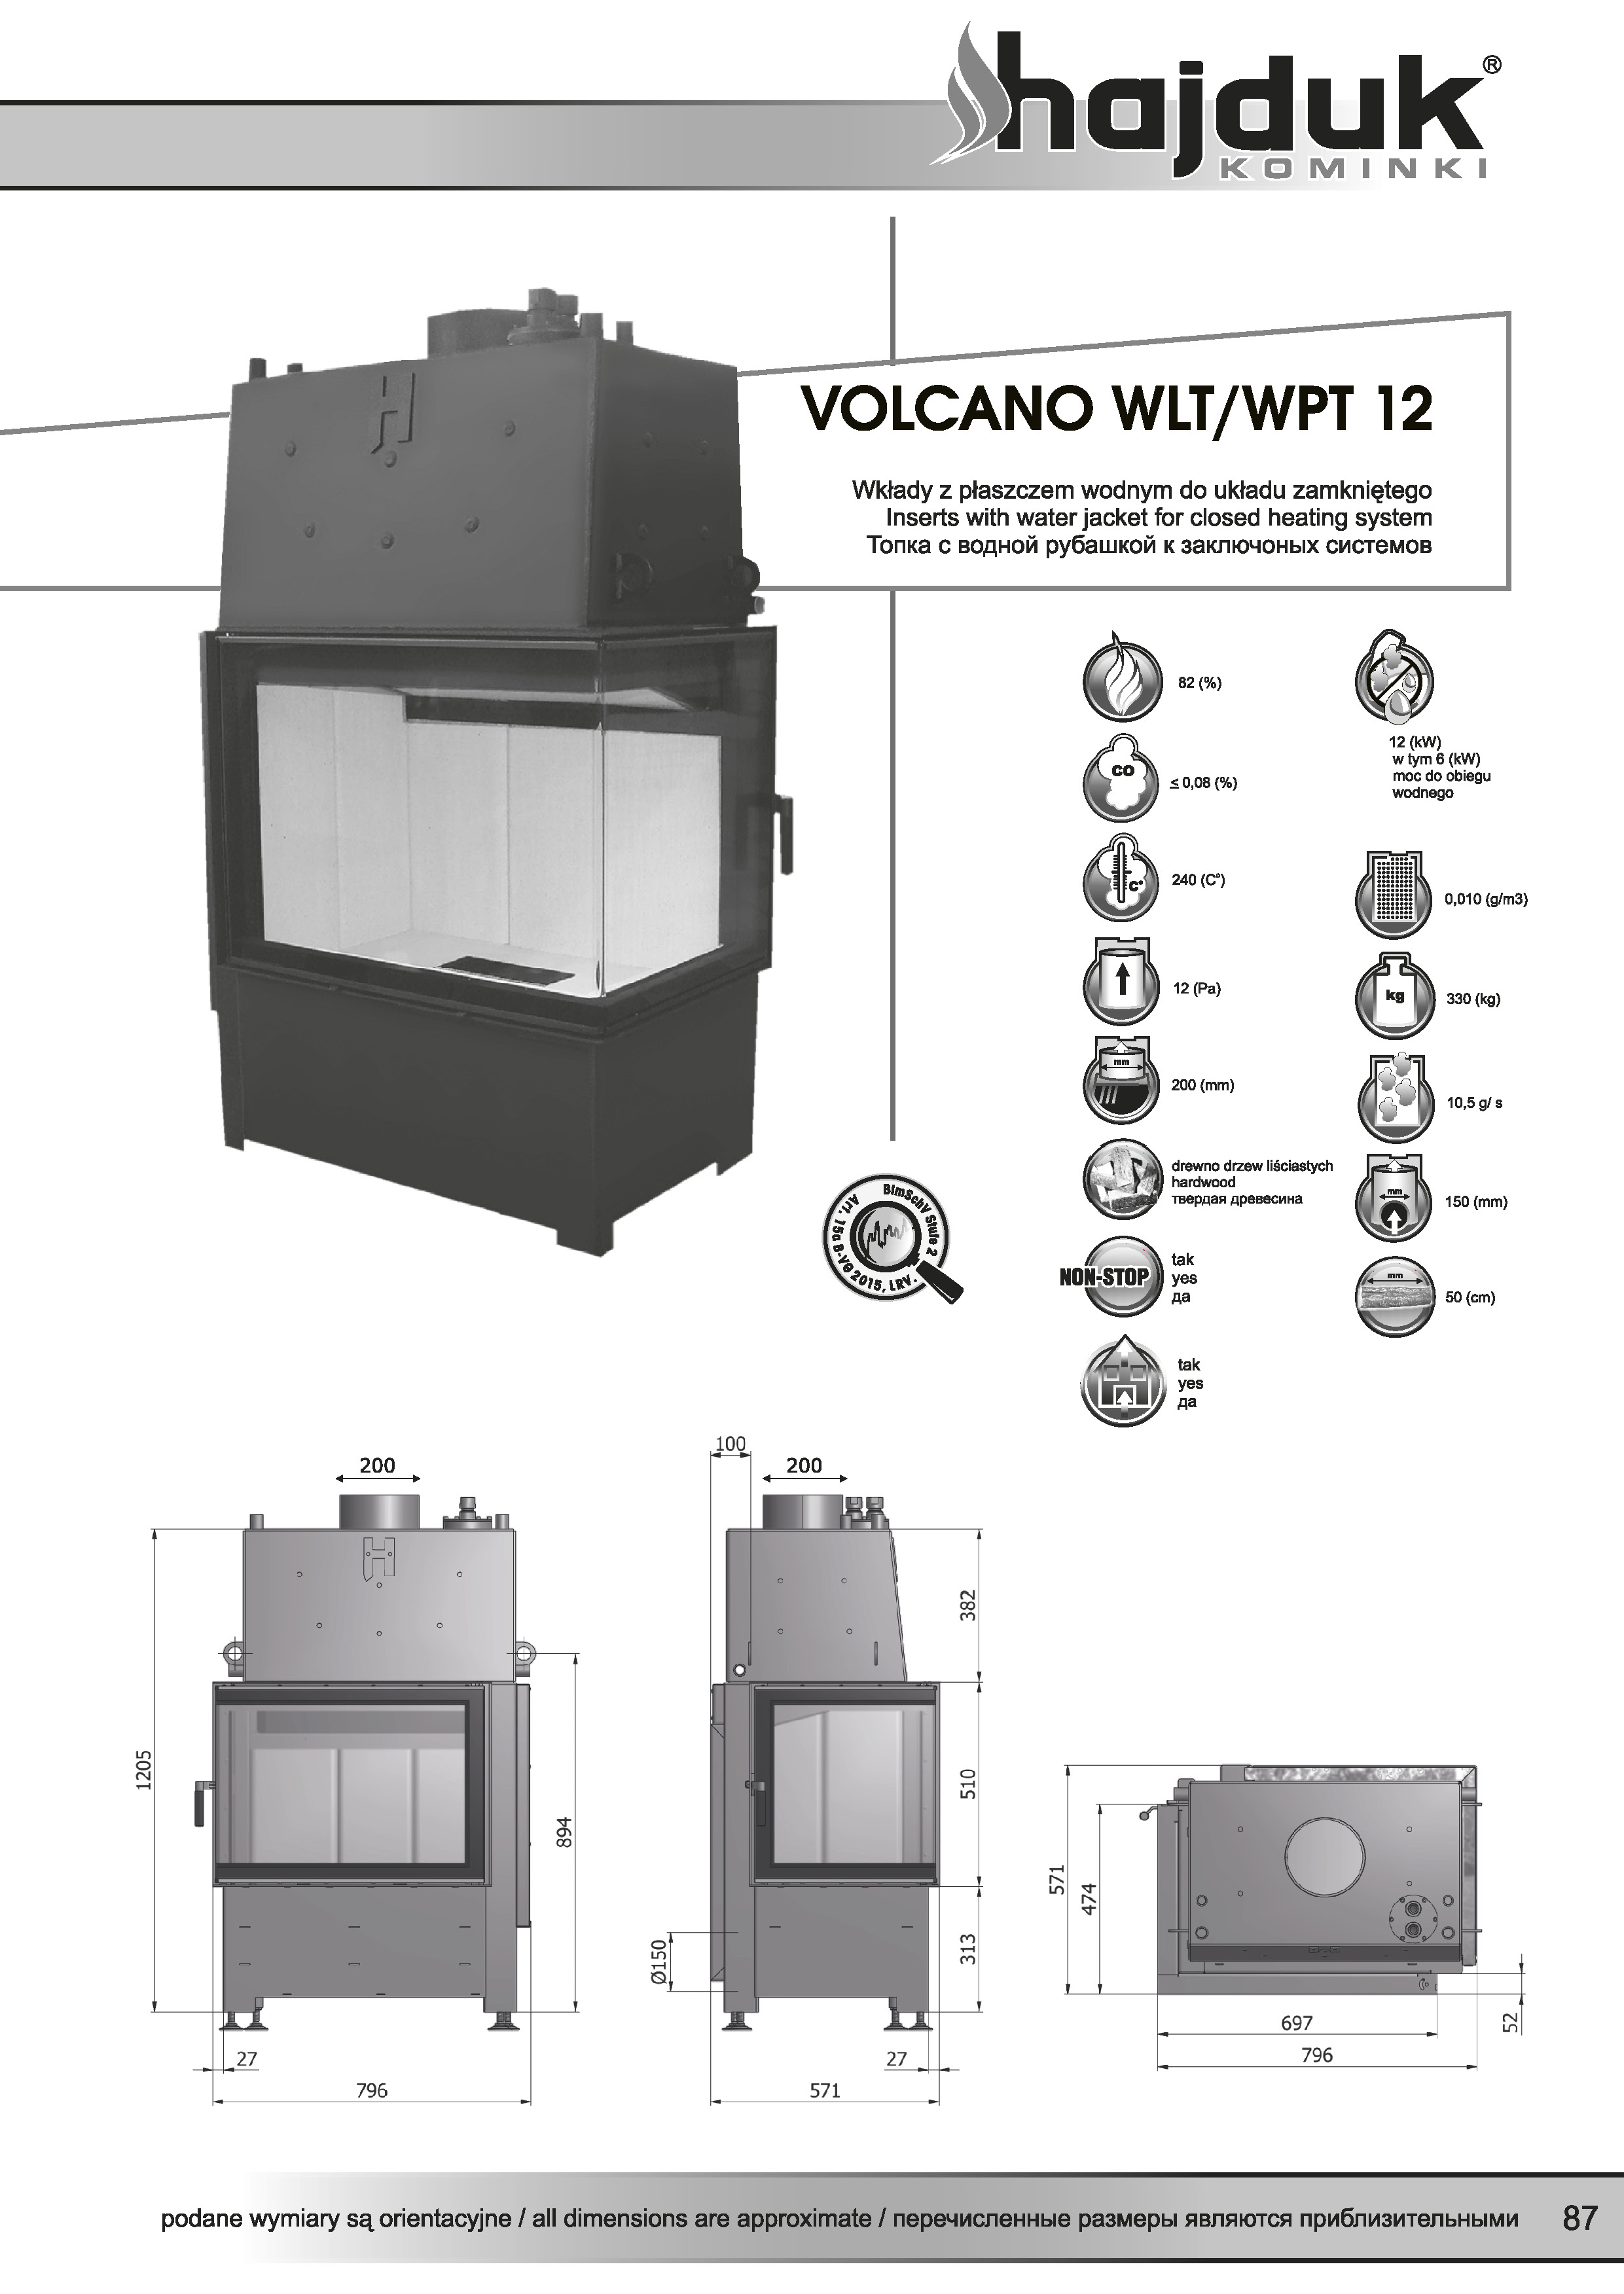 Volcano%20WLT%20WPT%20 %2012%20 %20karta%20techniczna - Wasserführende Kamineinsätz Hajduk  Volcano WPT 12